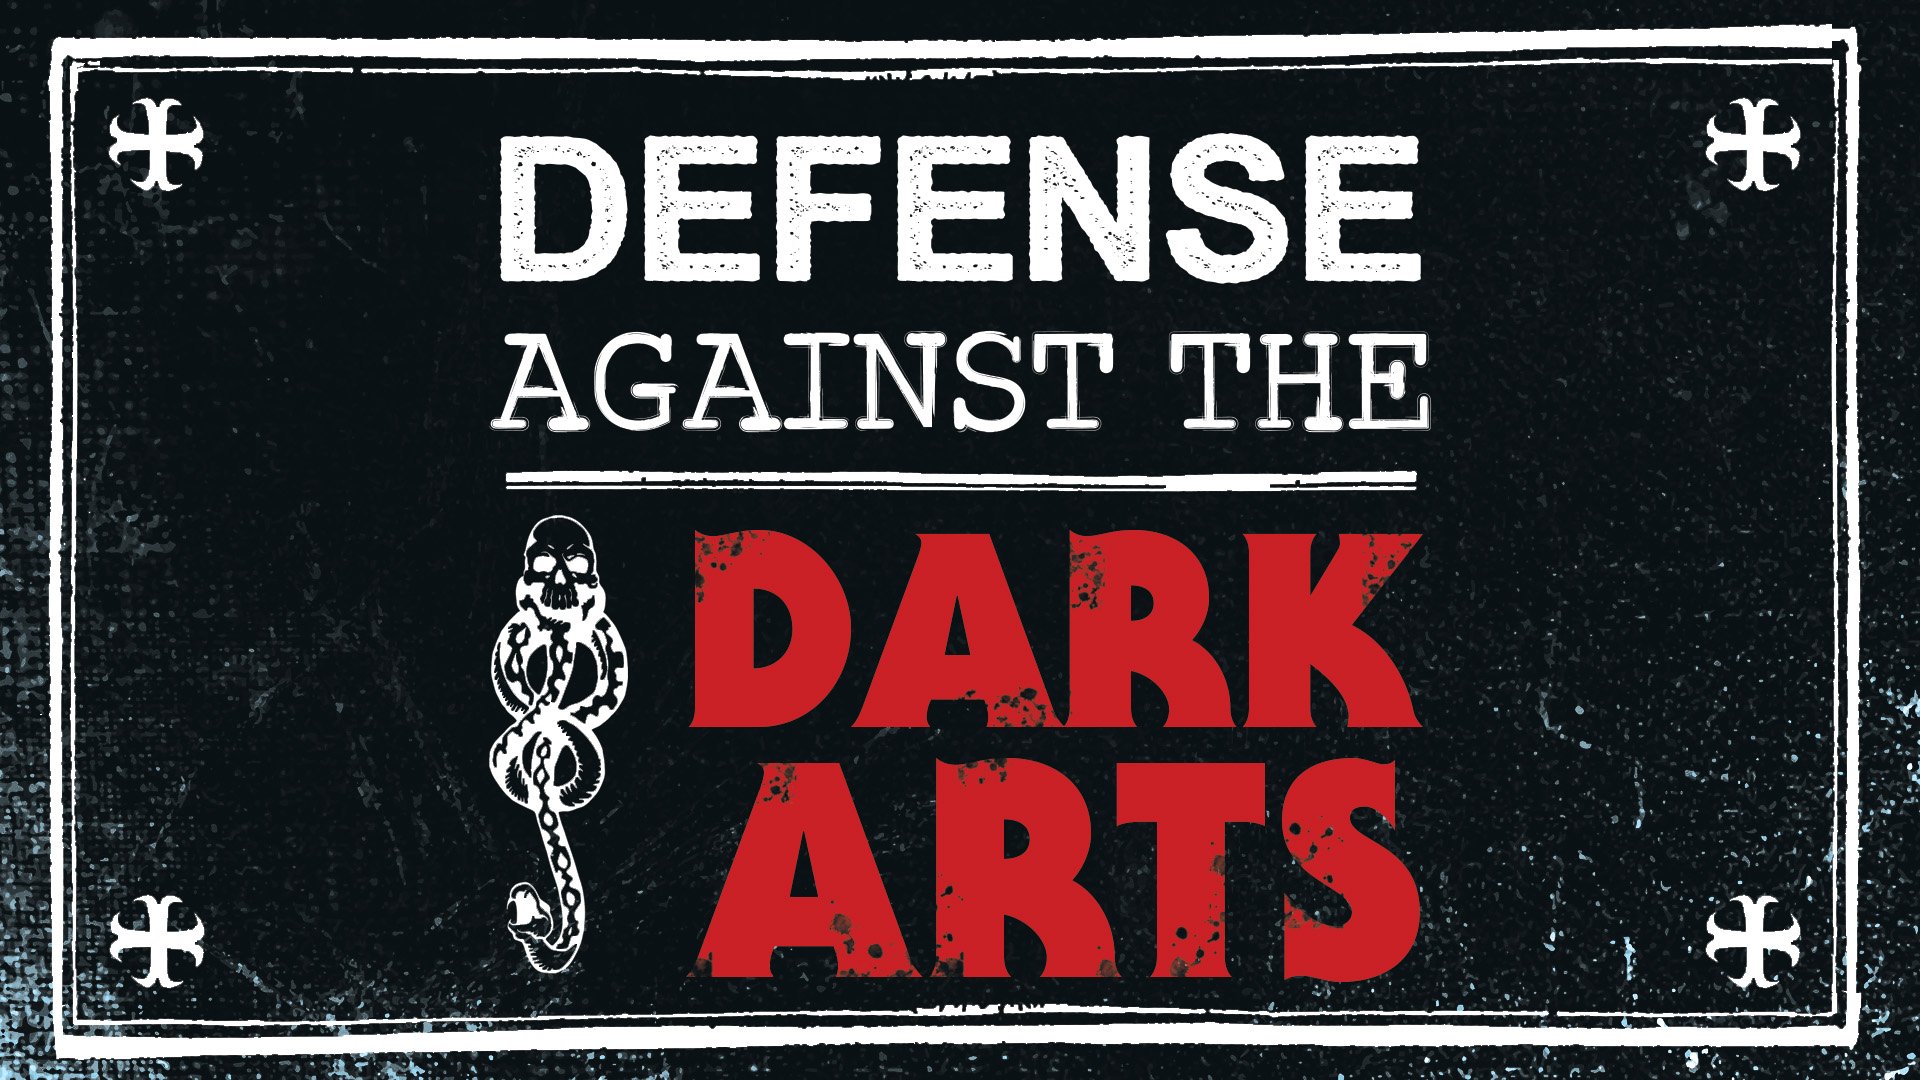 Defense Against the Dark Arts